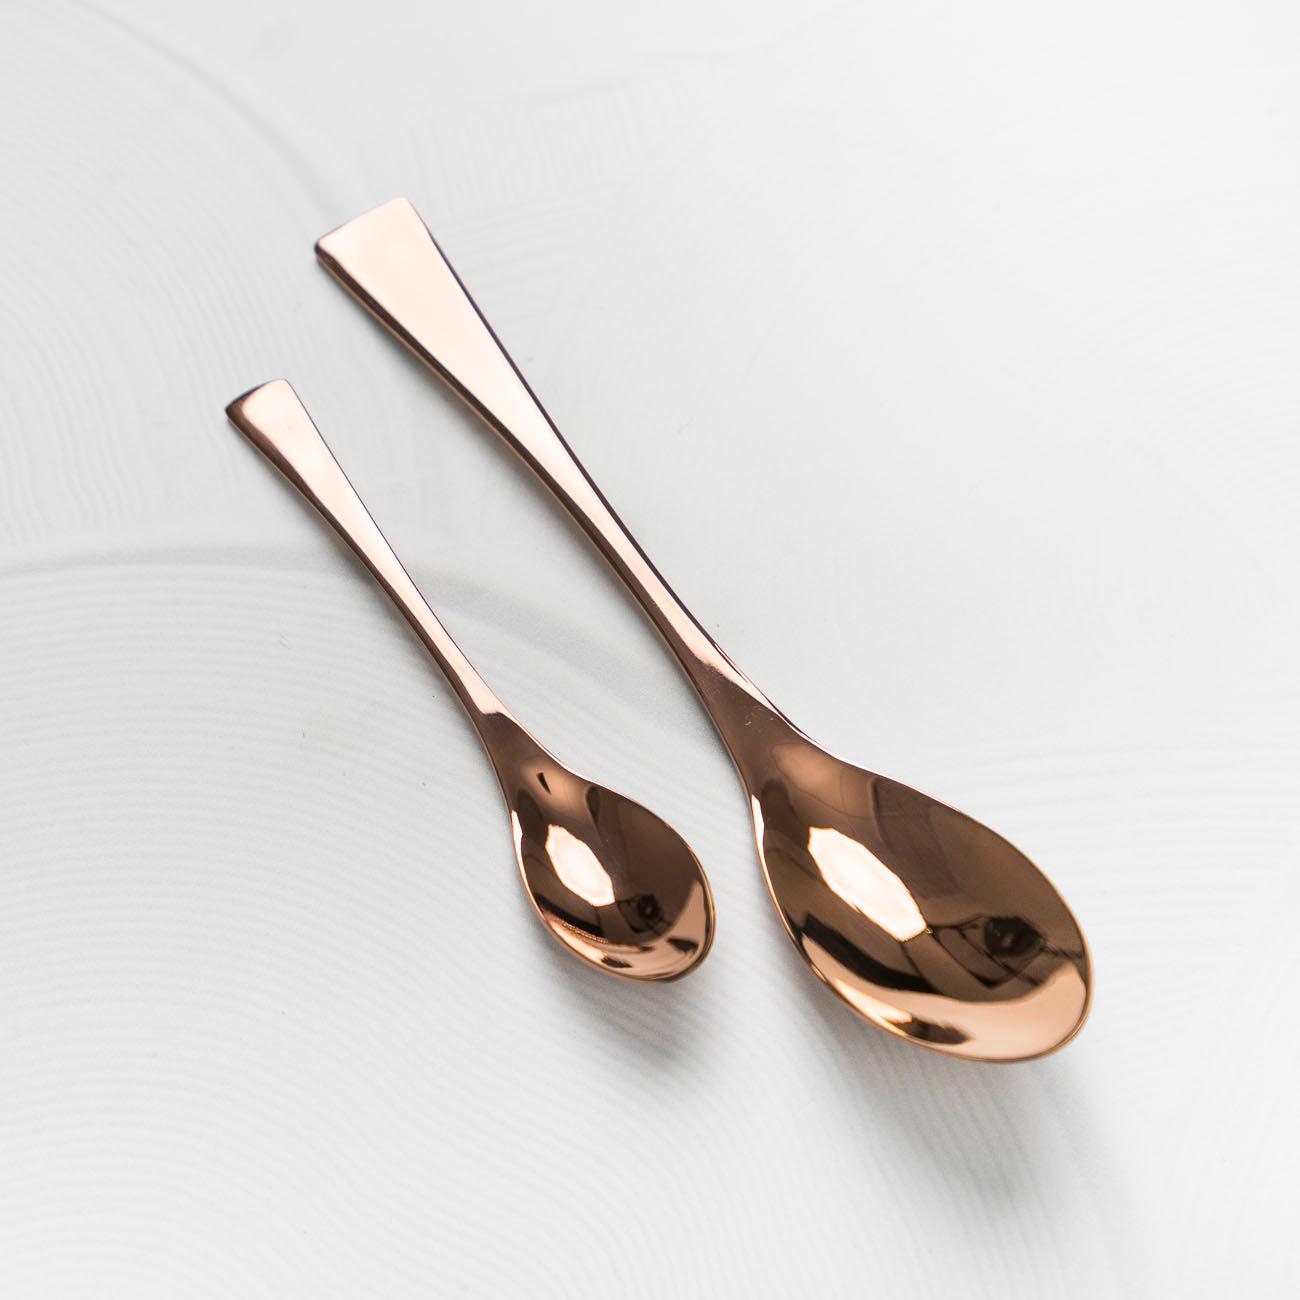 Quenelle/Rocher Spoon Bundle - Copper